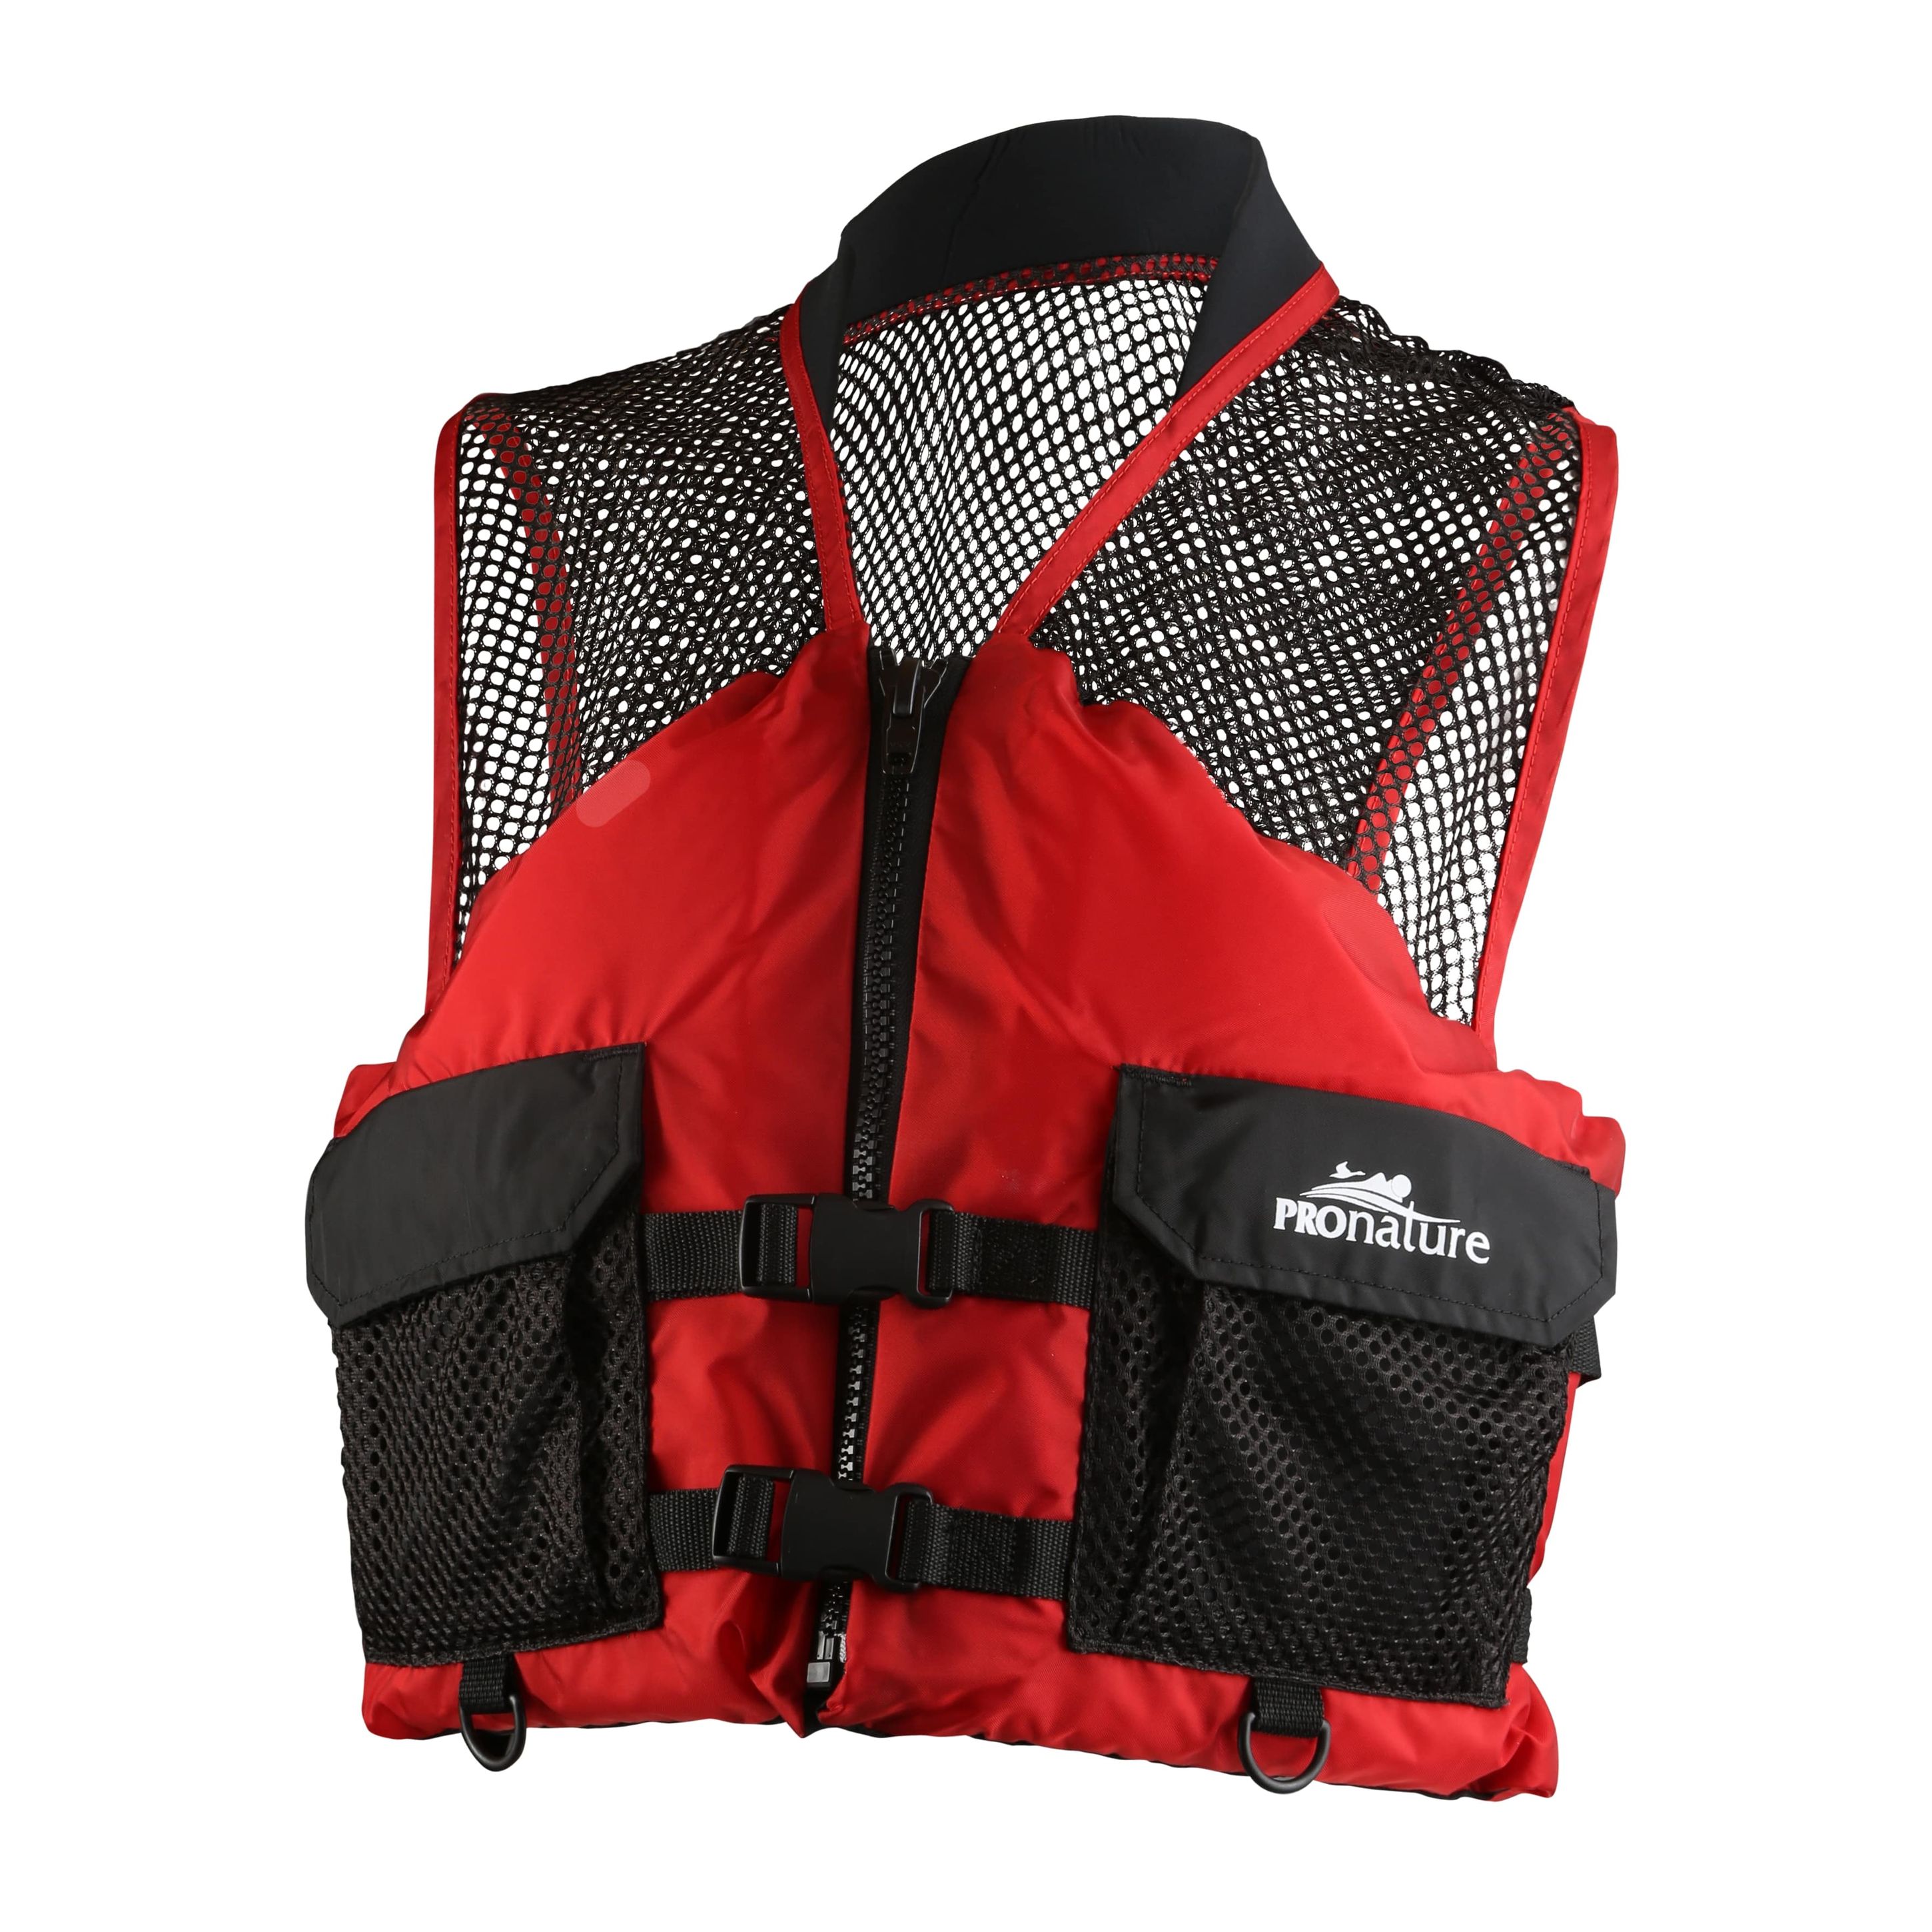 Specialized flotation vest